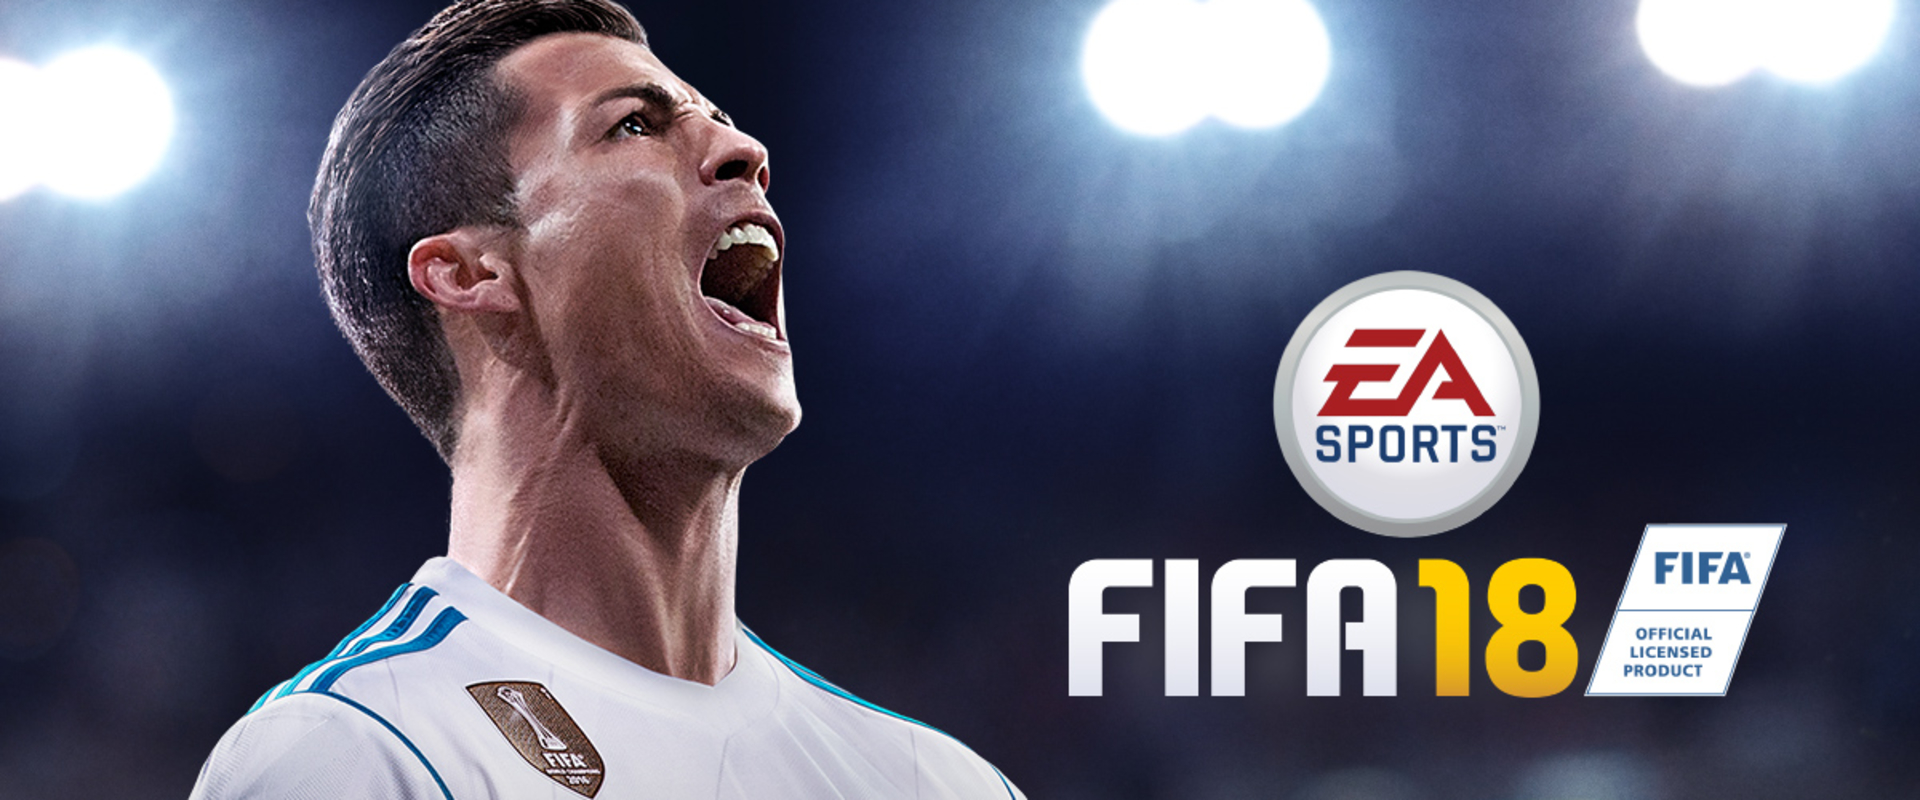 Újabb offline FIFA18 bajnokságot kerül megrendezésre Budapesten!